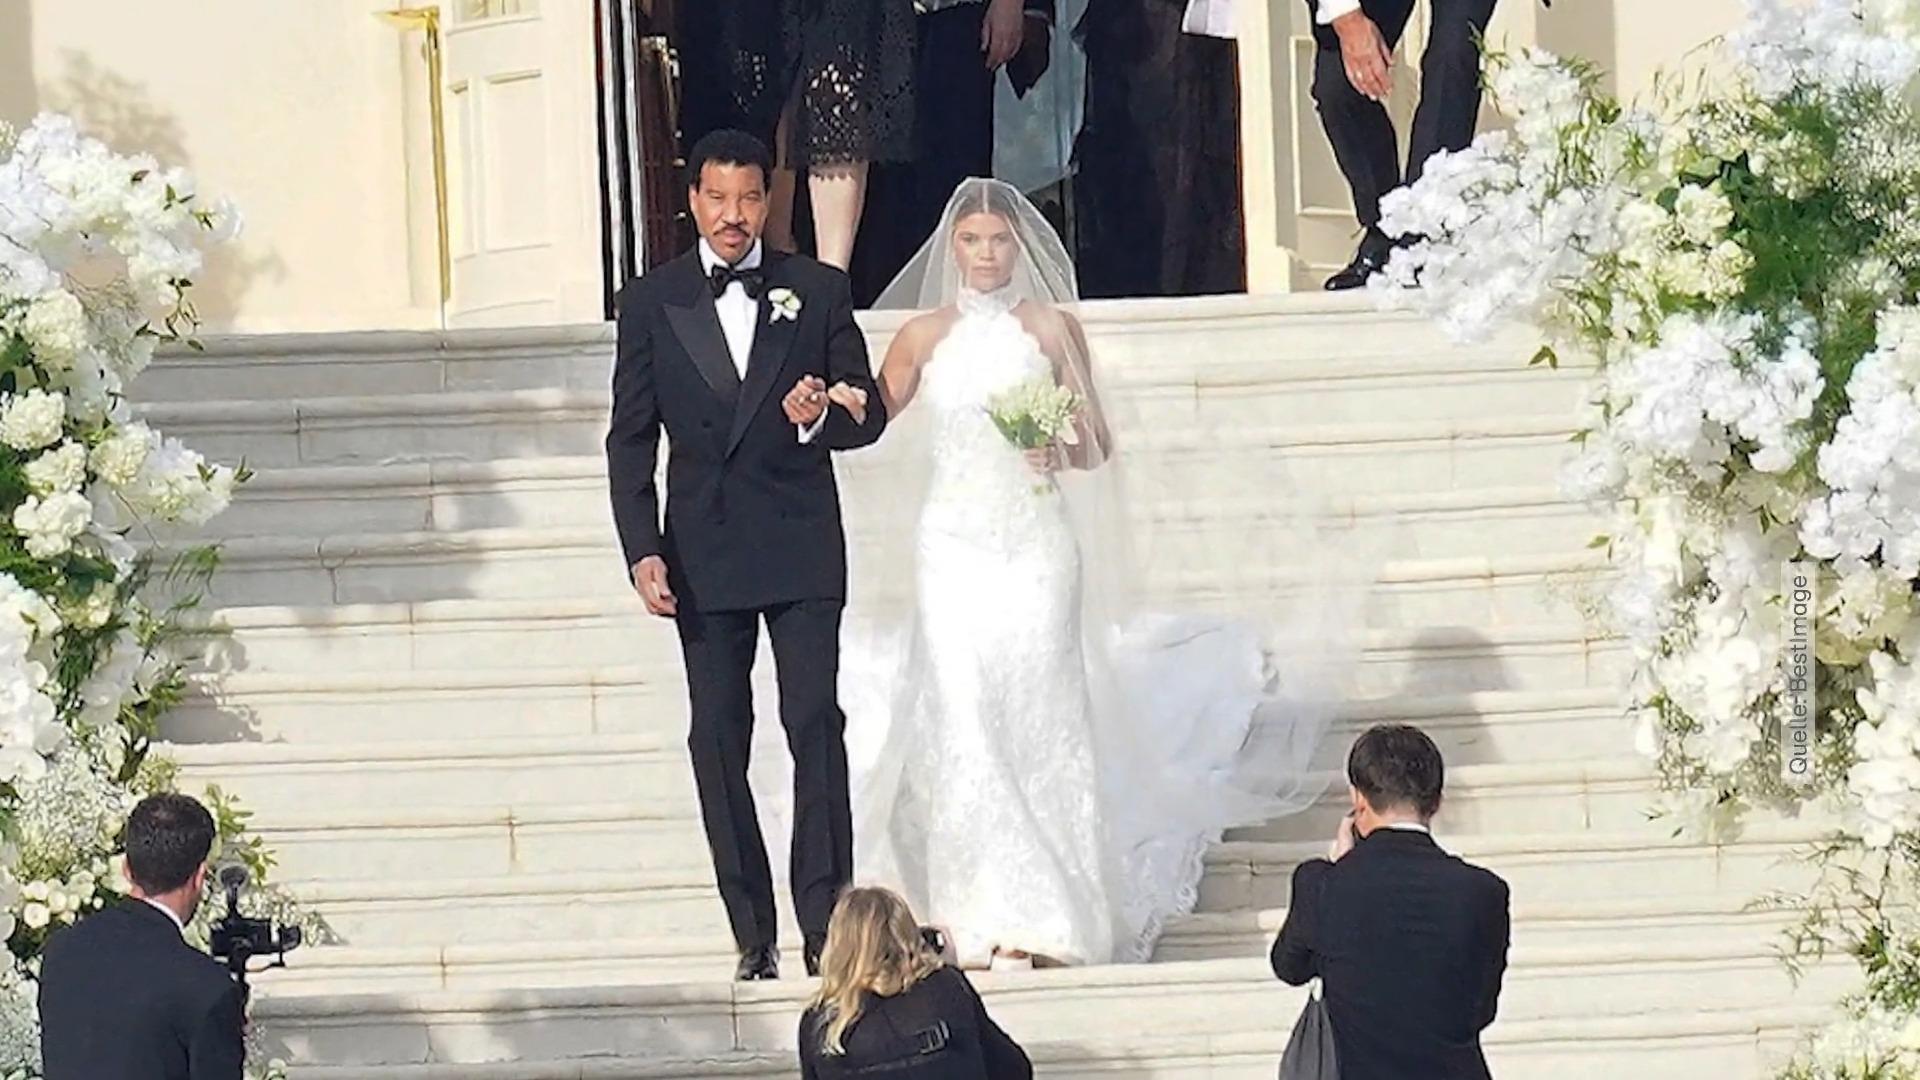 Sofia Richie si è sposata - con ospiti illustri guidati da papà Lionel Richie lungo il corridoio